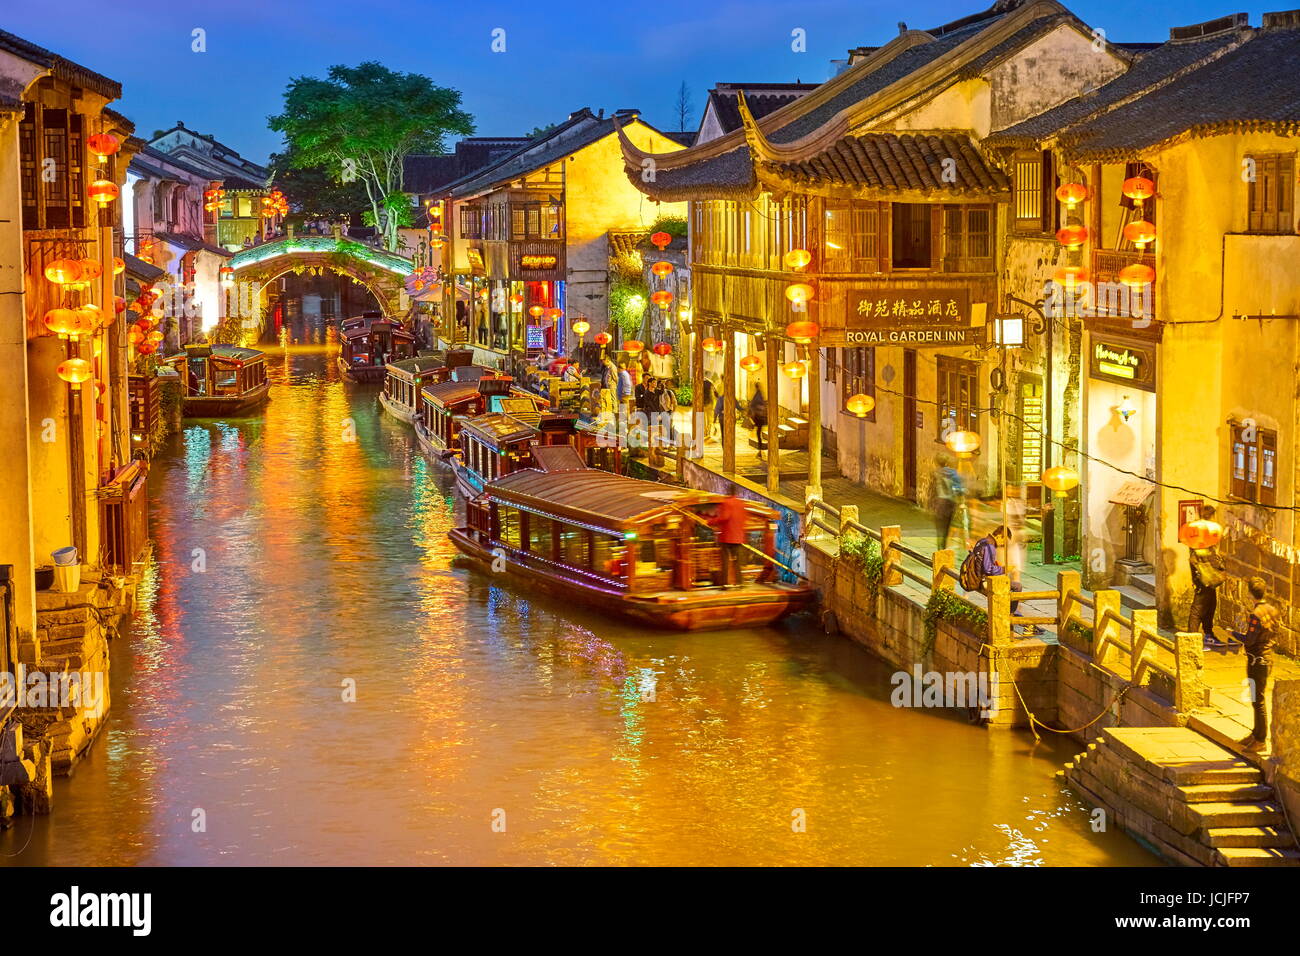 Shantang Canal at evening, Suzhou, China Stock Photo